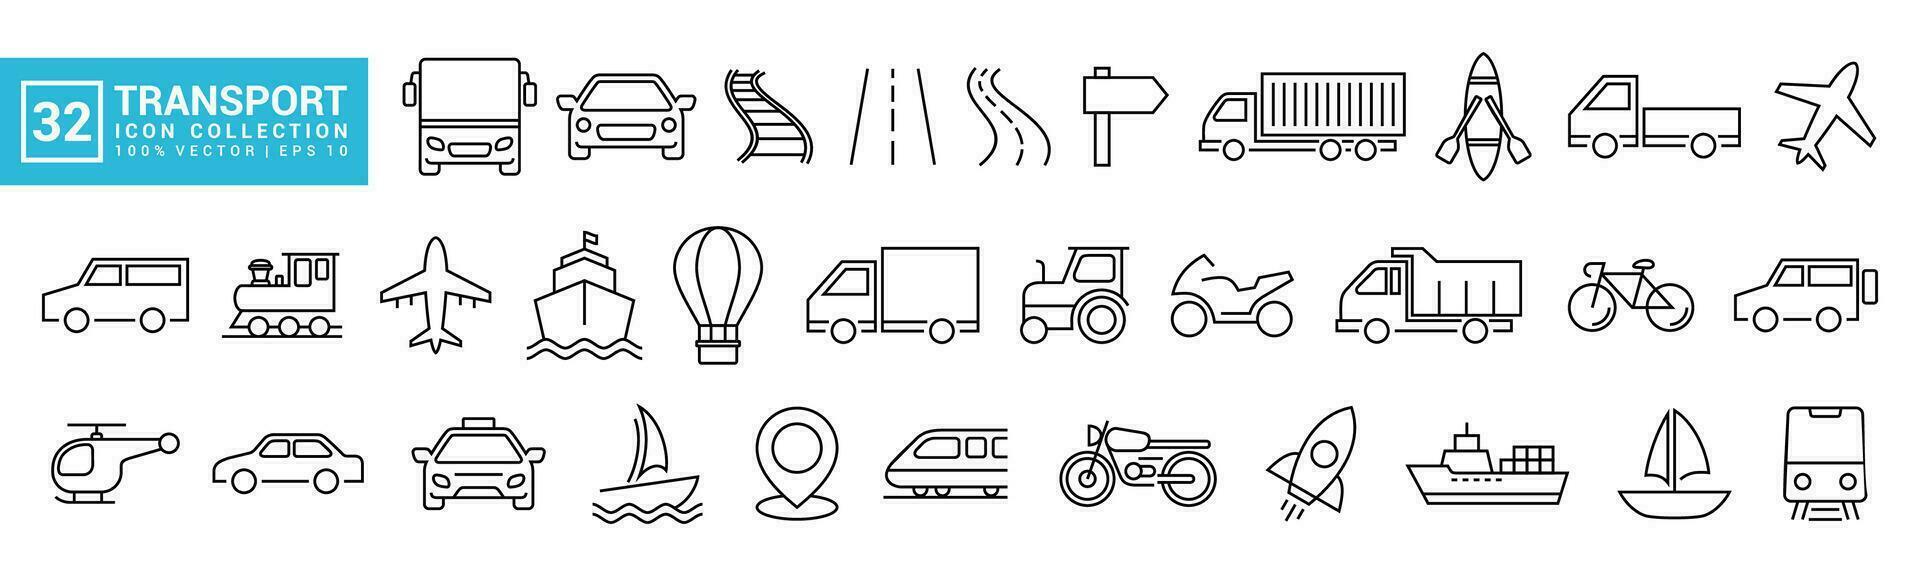 colección íconos de transporte, público transporte, privado vehículo, autobús, avión, barco, editable y redimensionable vector eps 10